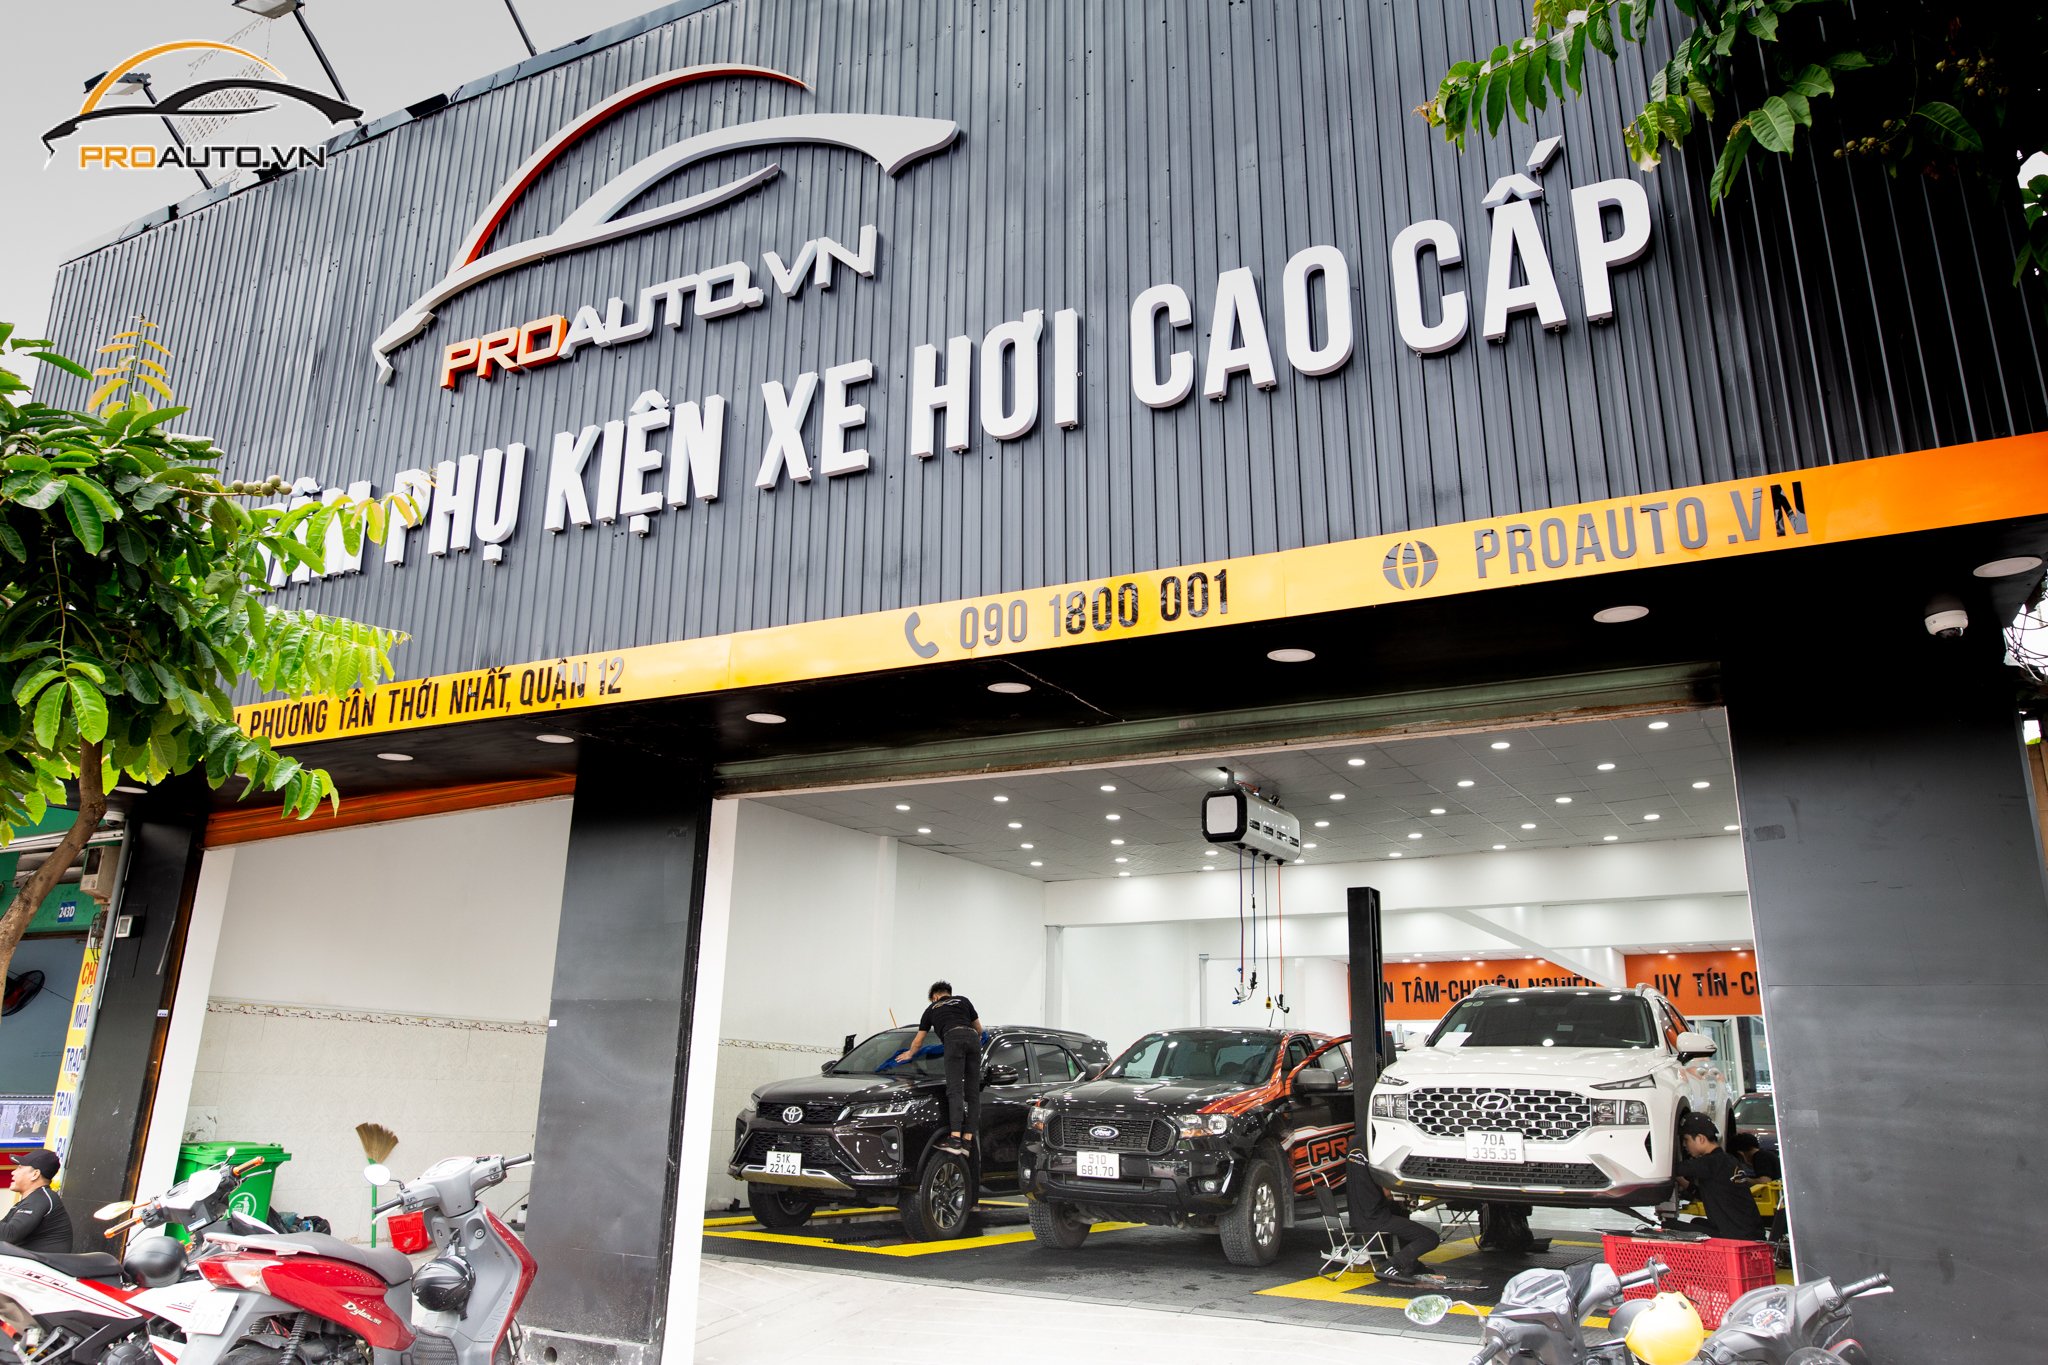 Proauto.vn - Trung tâm phụ kiện đồ chơi xe hơi uy tín tại Hà Nội